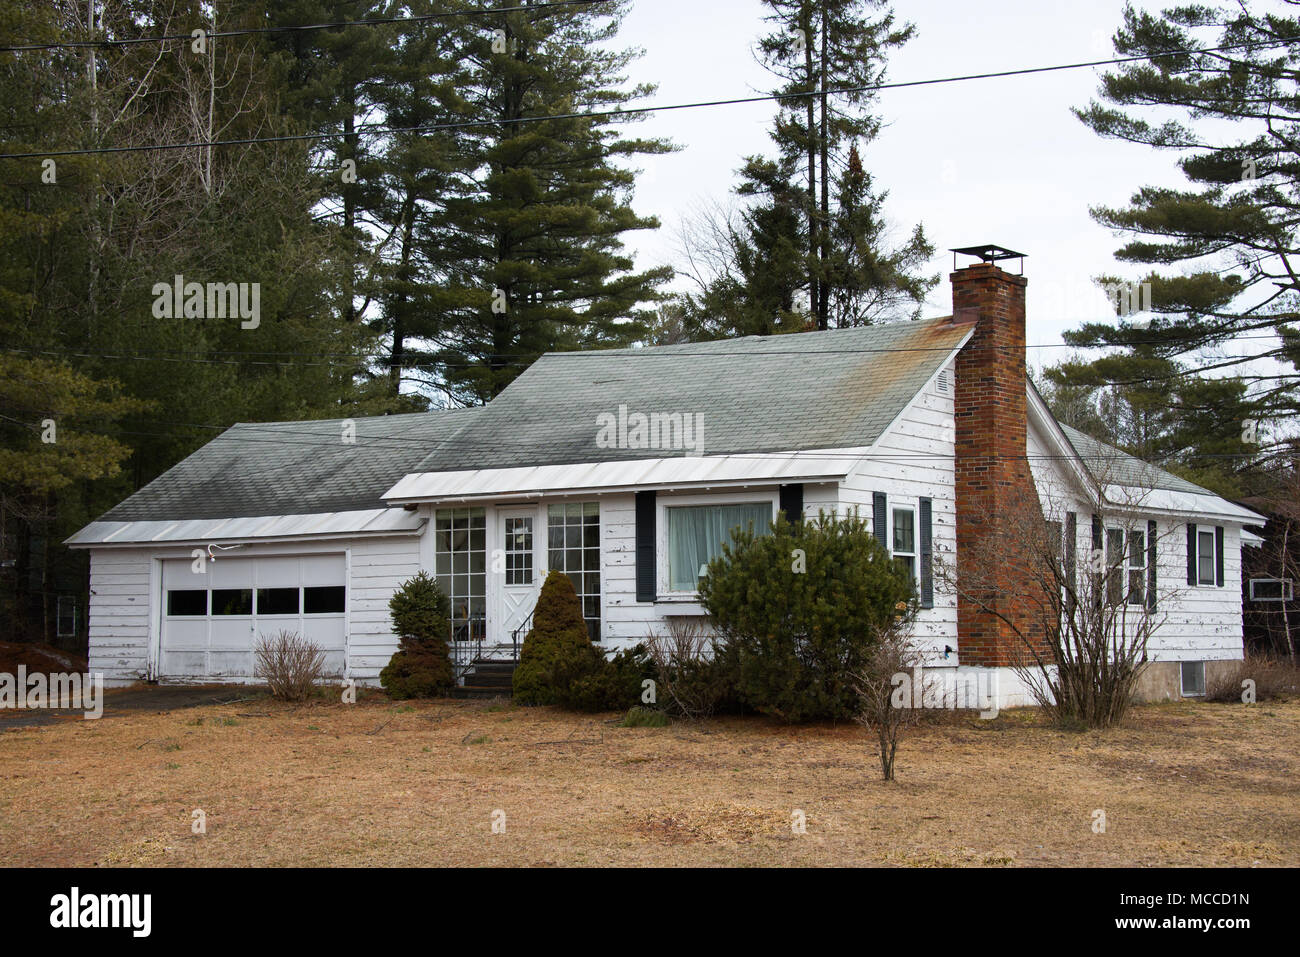 Maison à ossature bois blanc négligé dans le besoin de peinture et d'entretien dans les Adirondacks, NY USA Banque D'Images